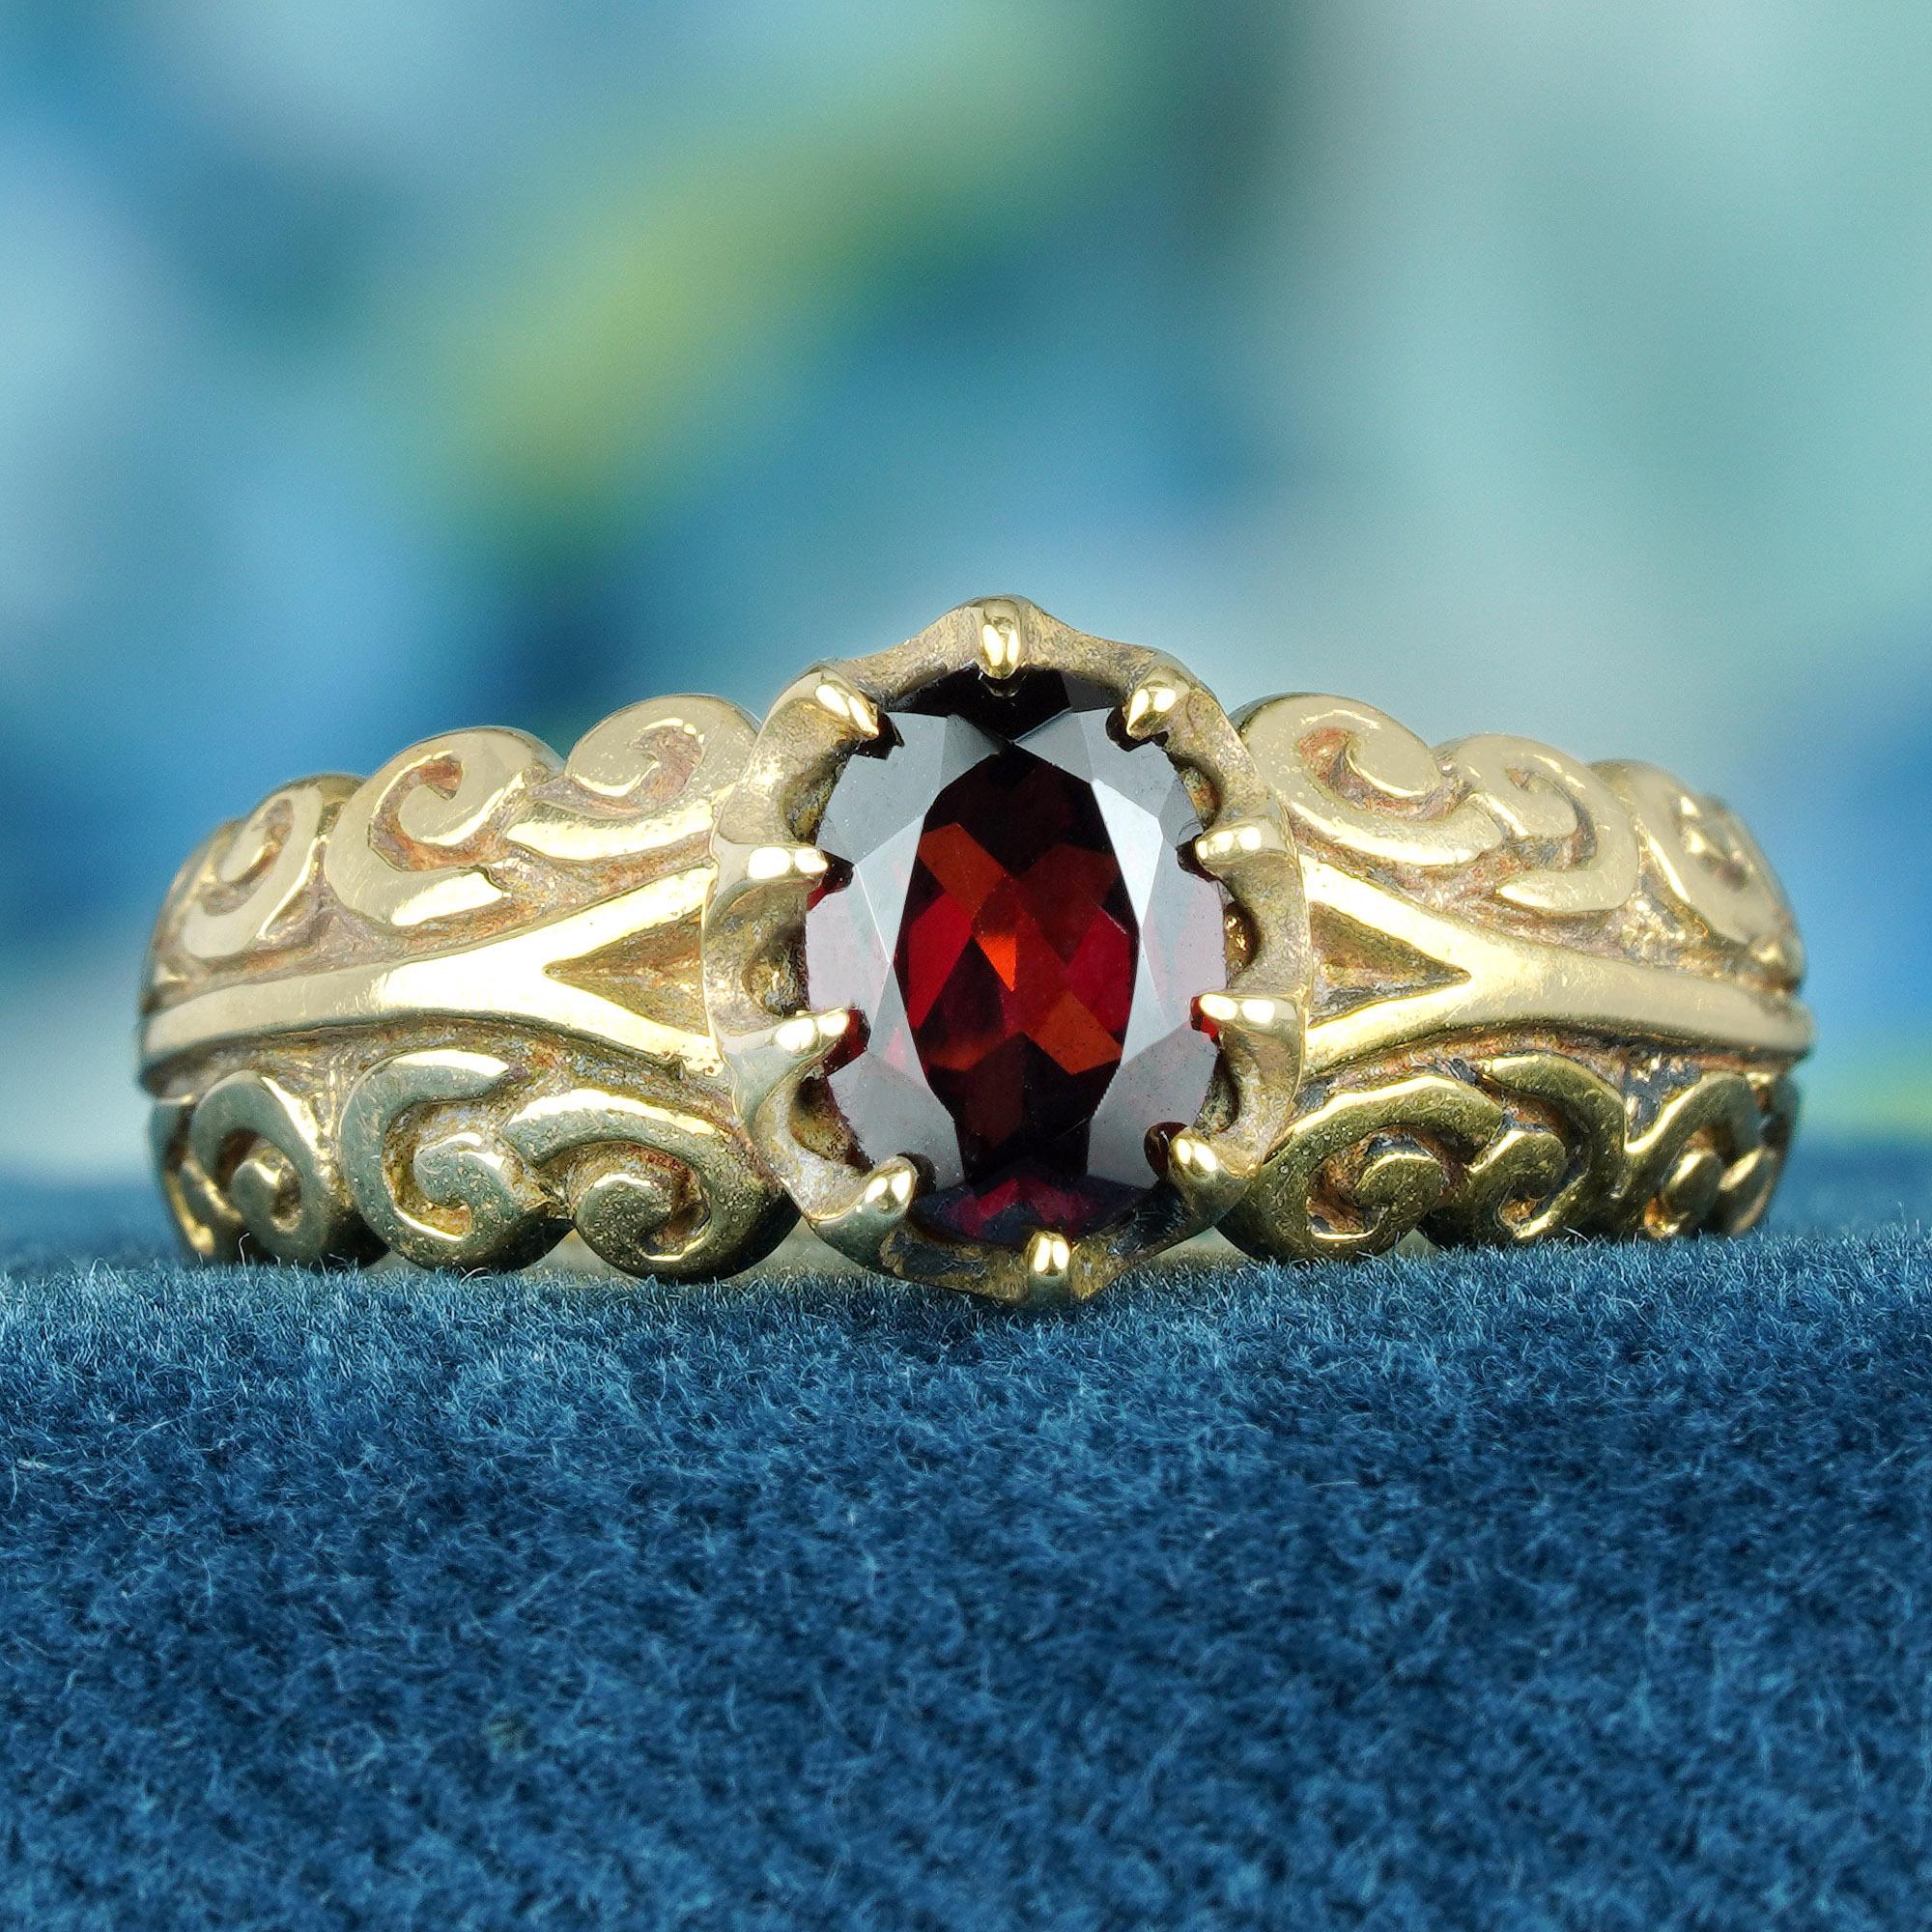 Dieser mit einem feurigen ovalen roten Granat geschmückte Ring ist ein Meisterwerk der Handwerkskunst und in Gold gefasst. Das zarte, geschnitzte Band spricht Bände über die Kunstfertigkeit und die Liebe zum Detail. Gönnen Sie sich also einen Hauch